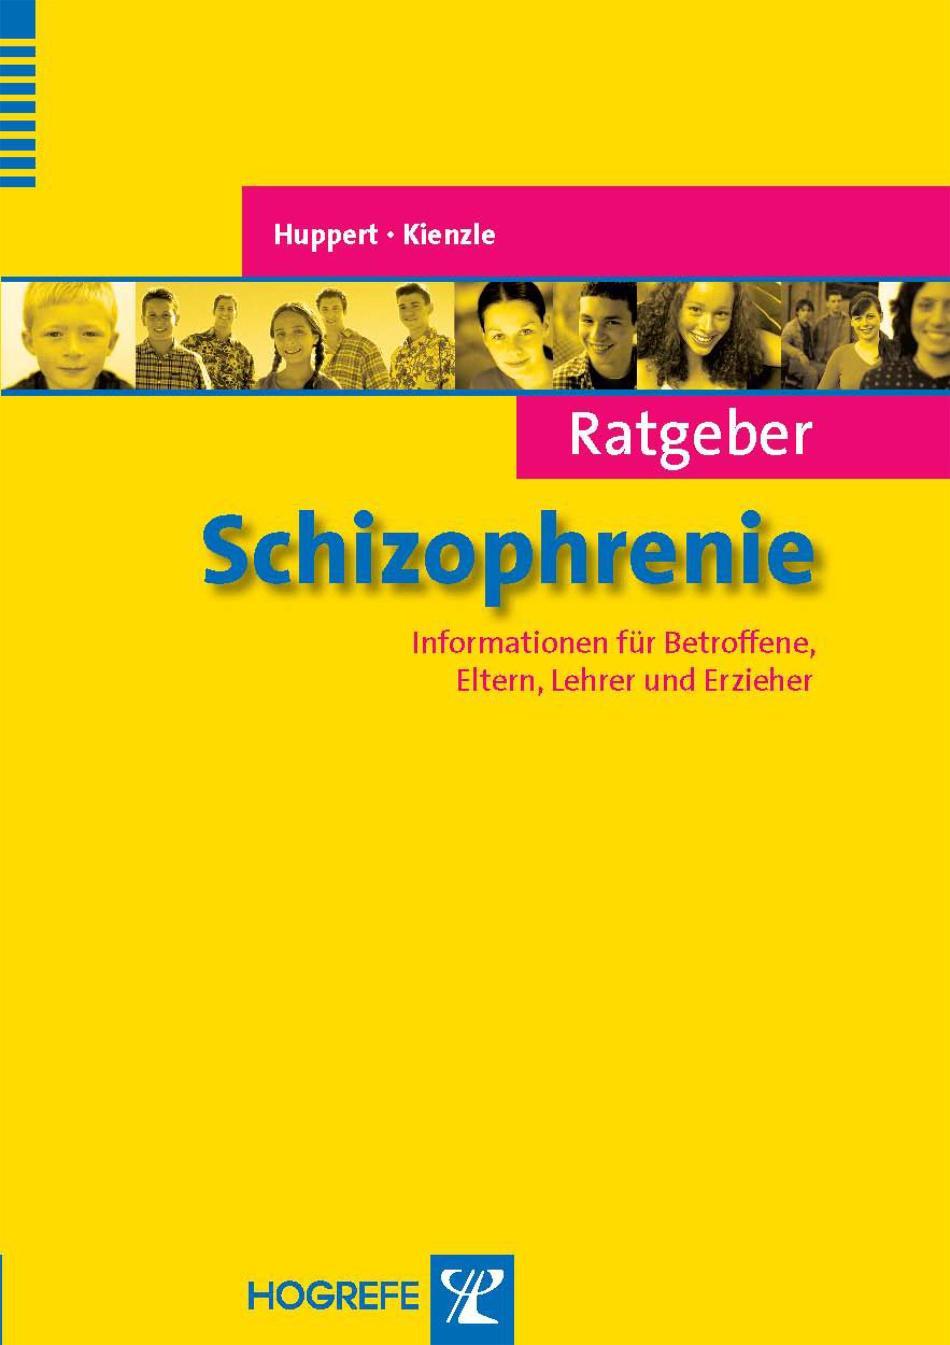 Ratgeber Schizophrenie Informationen für Betroffene, Eltern, Lehrer und Erzieher